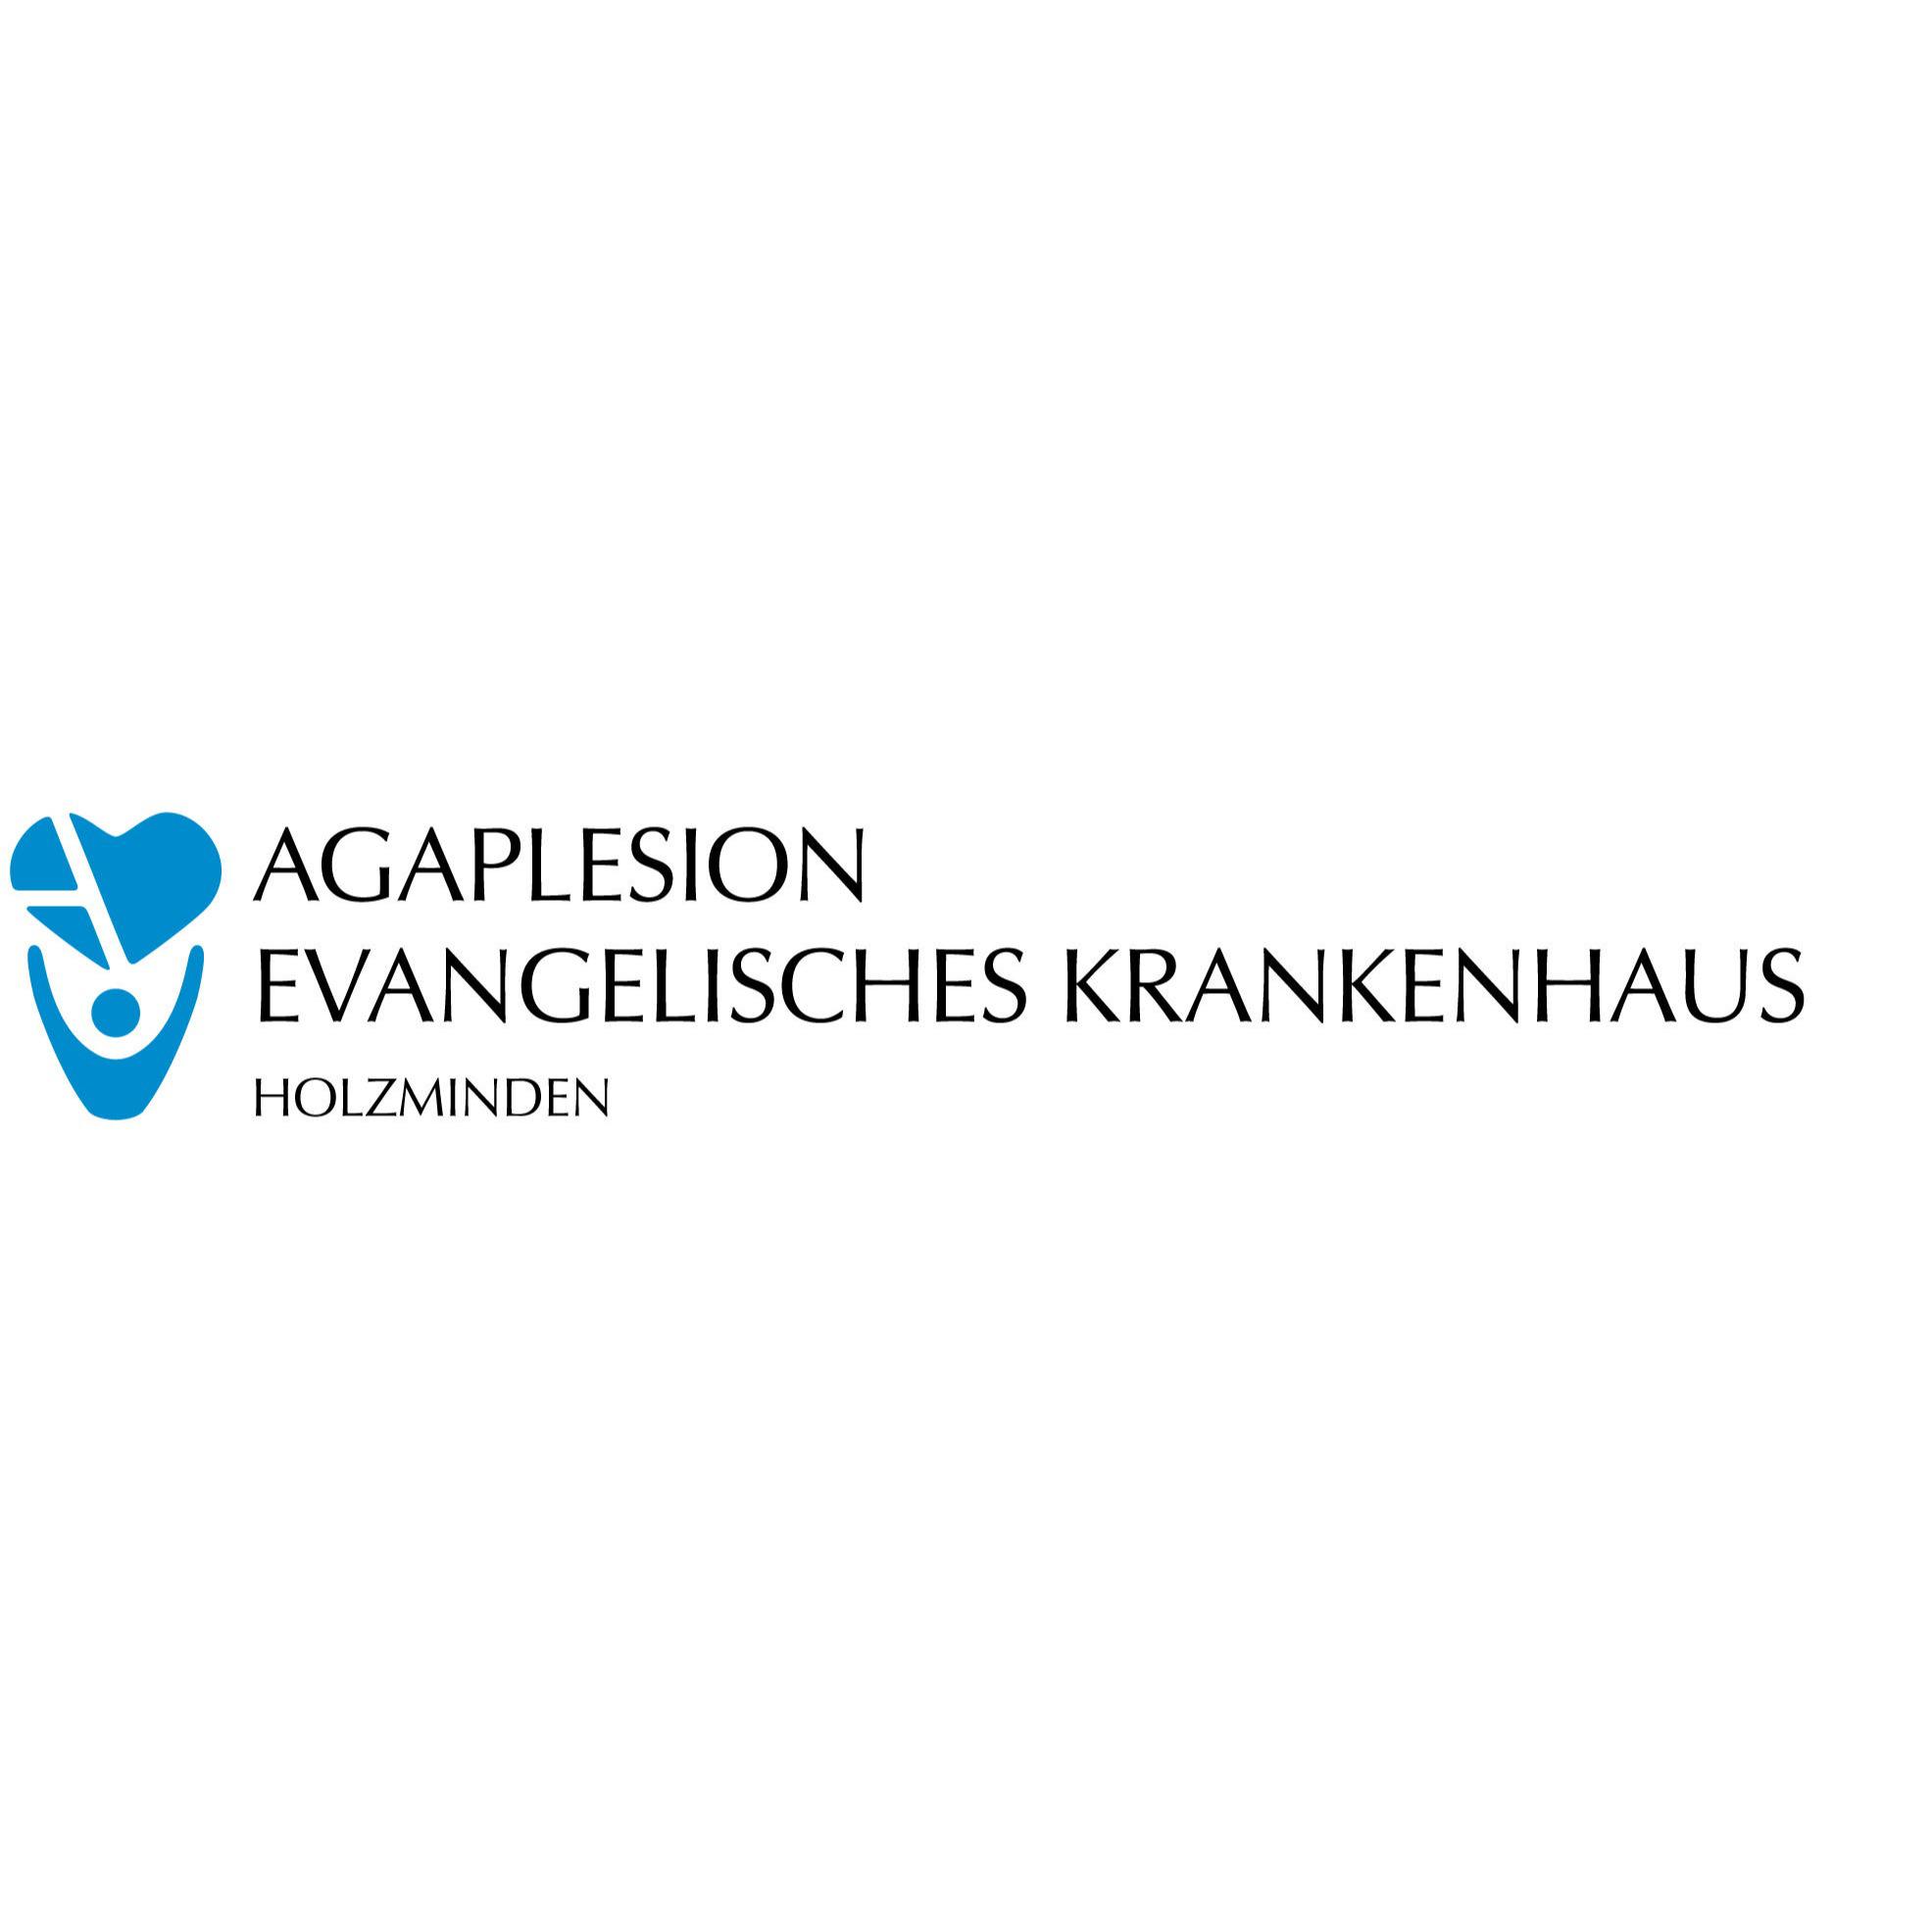 AGAPLESION EVANGELISCHES KRANKENHAUS HOLZMINDEN in Holzminden - Logo